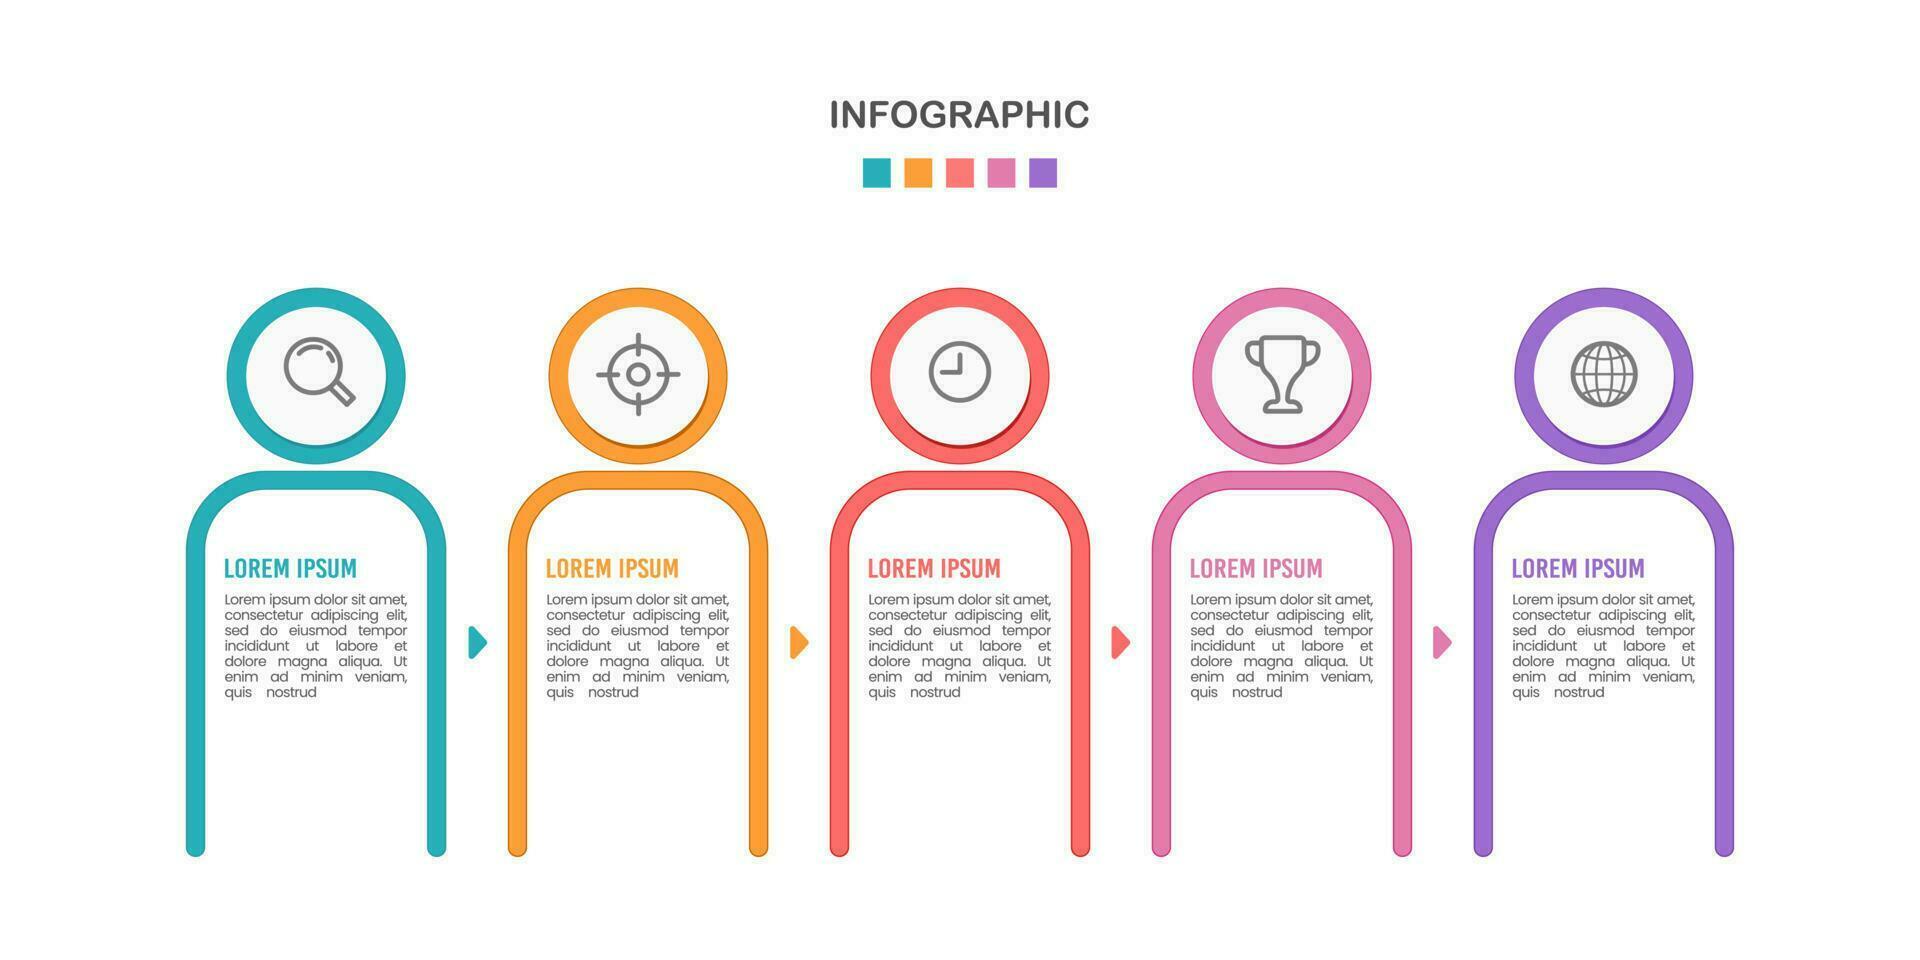 infografía personal datos 5 5 opciones vector ilustración.